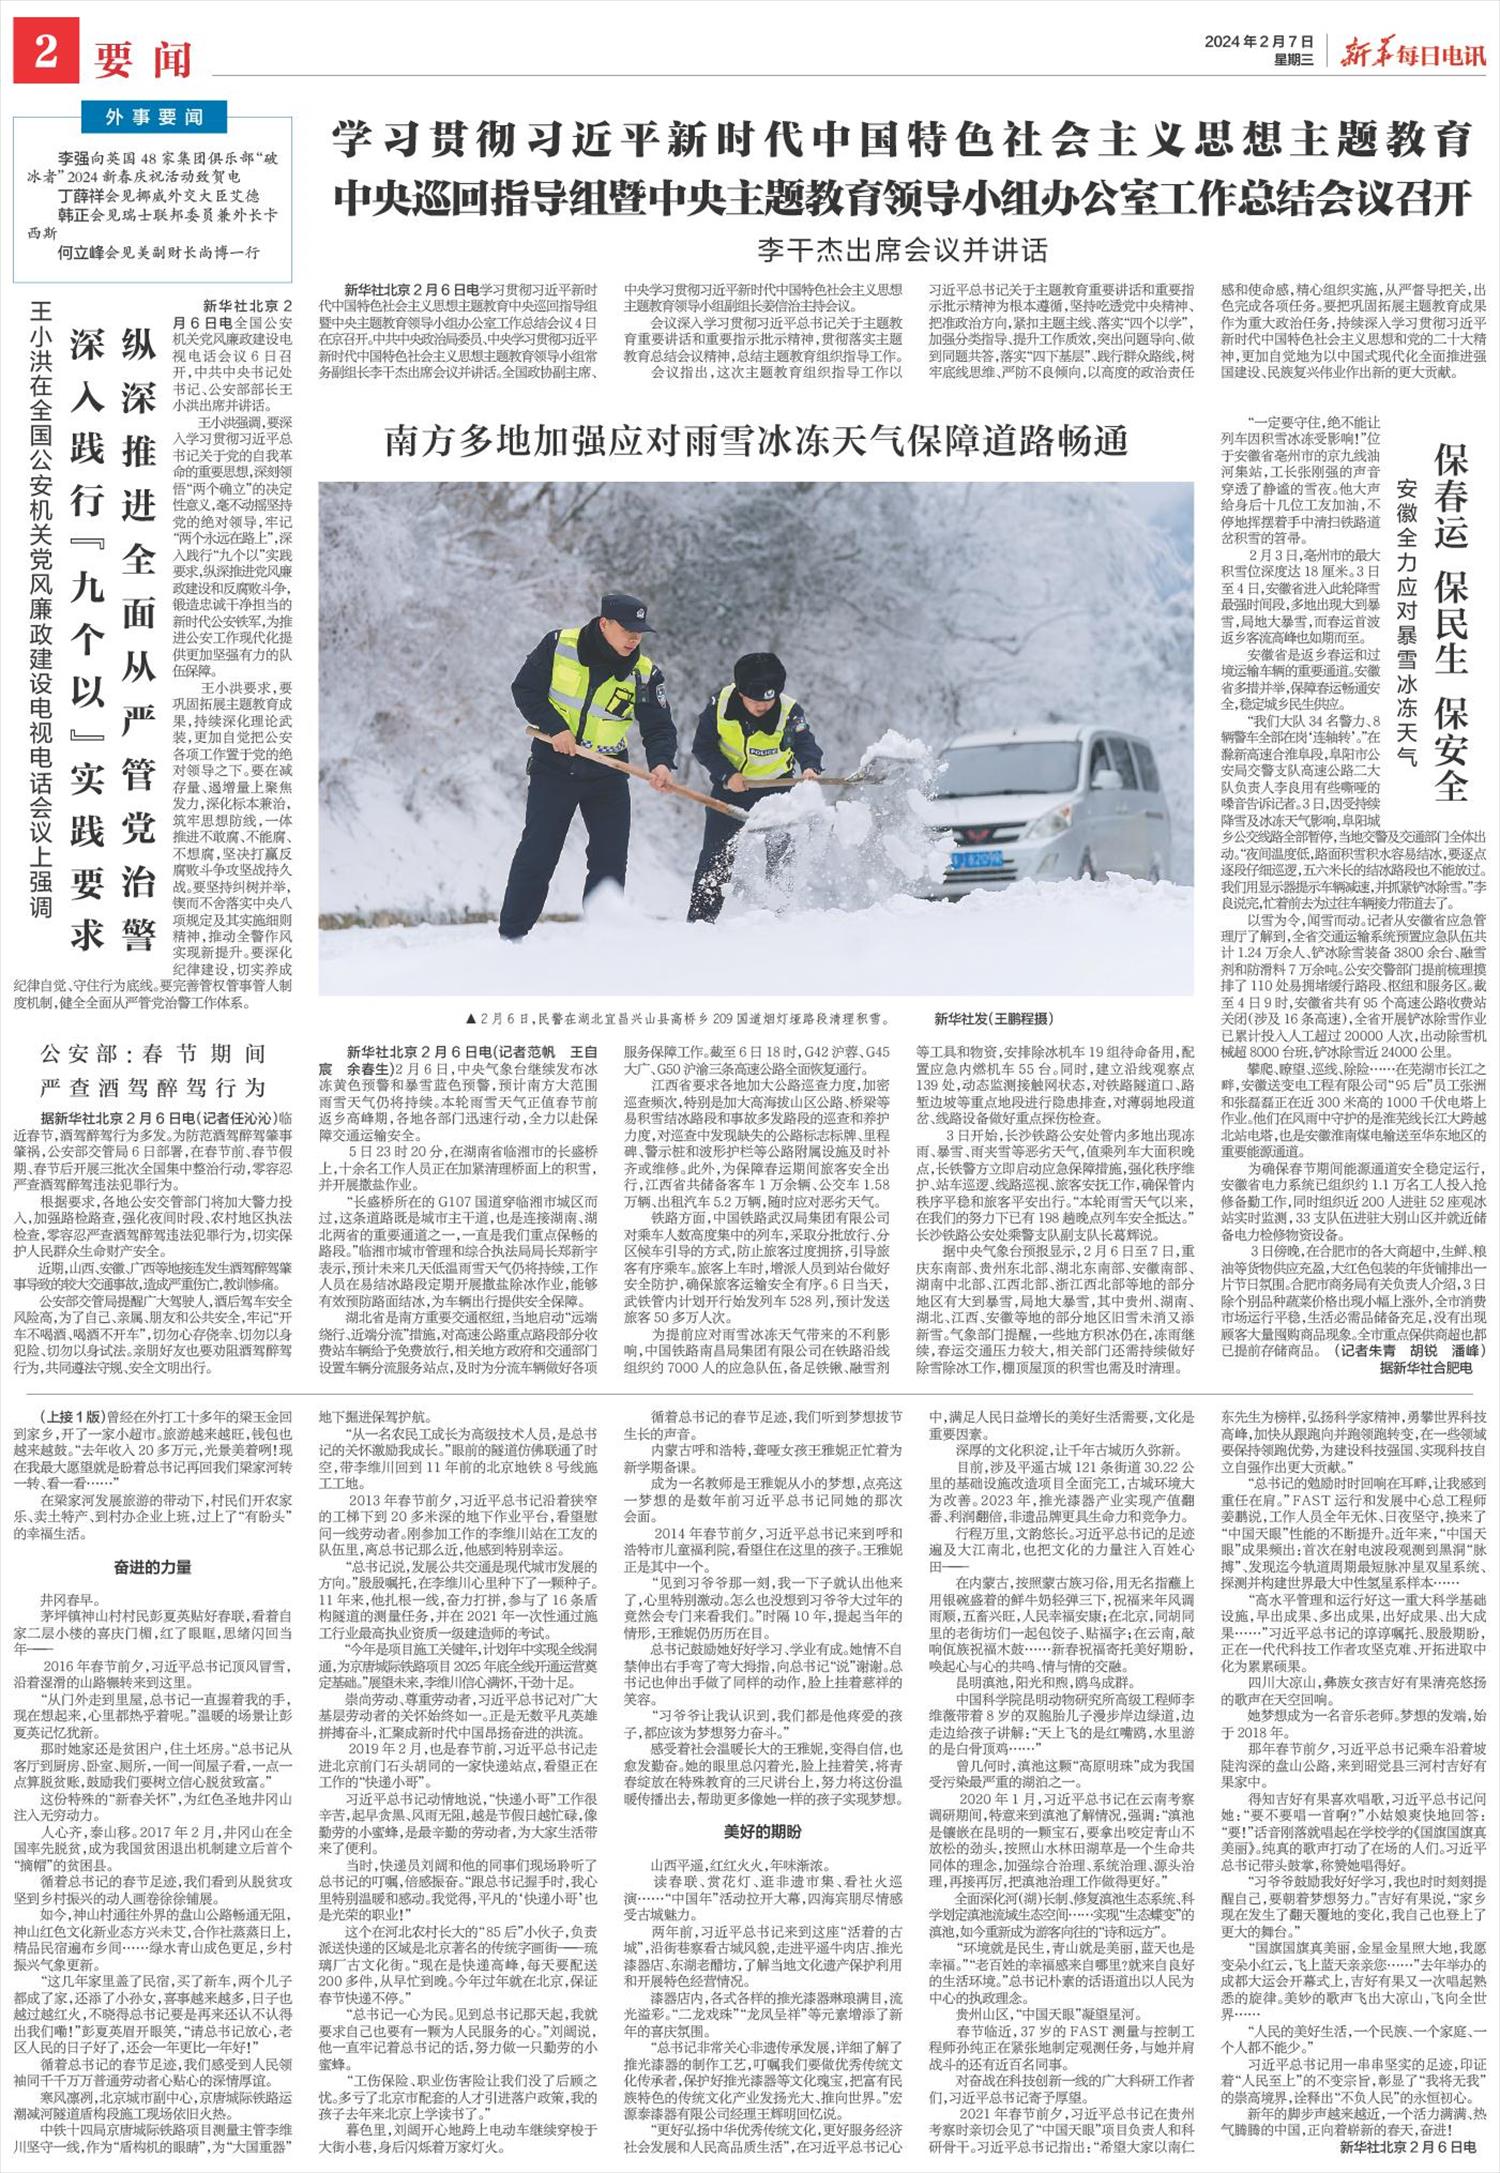 新华每日电讯-微报纸-2024年02月07日